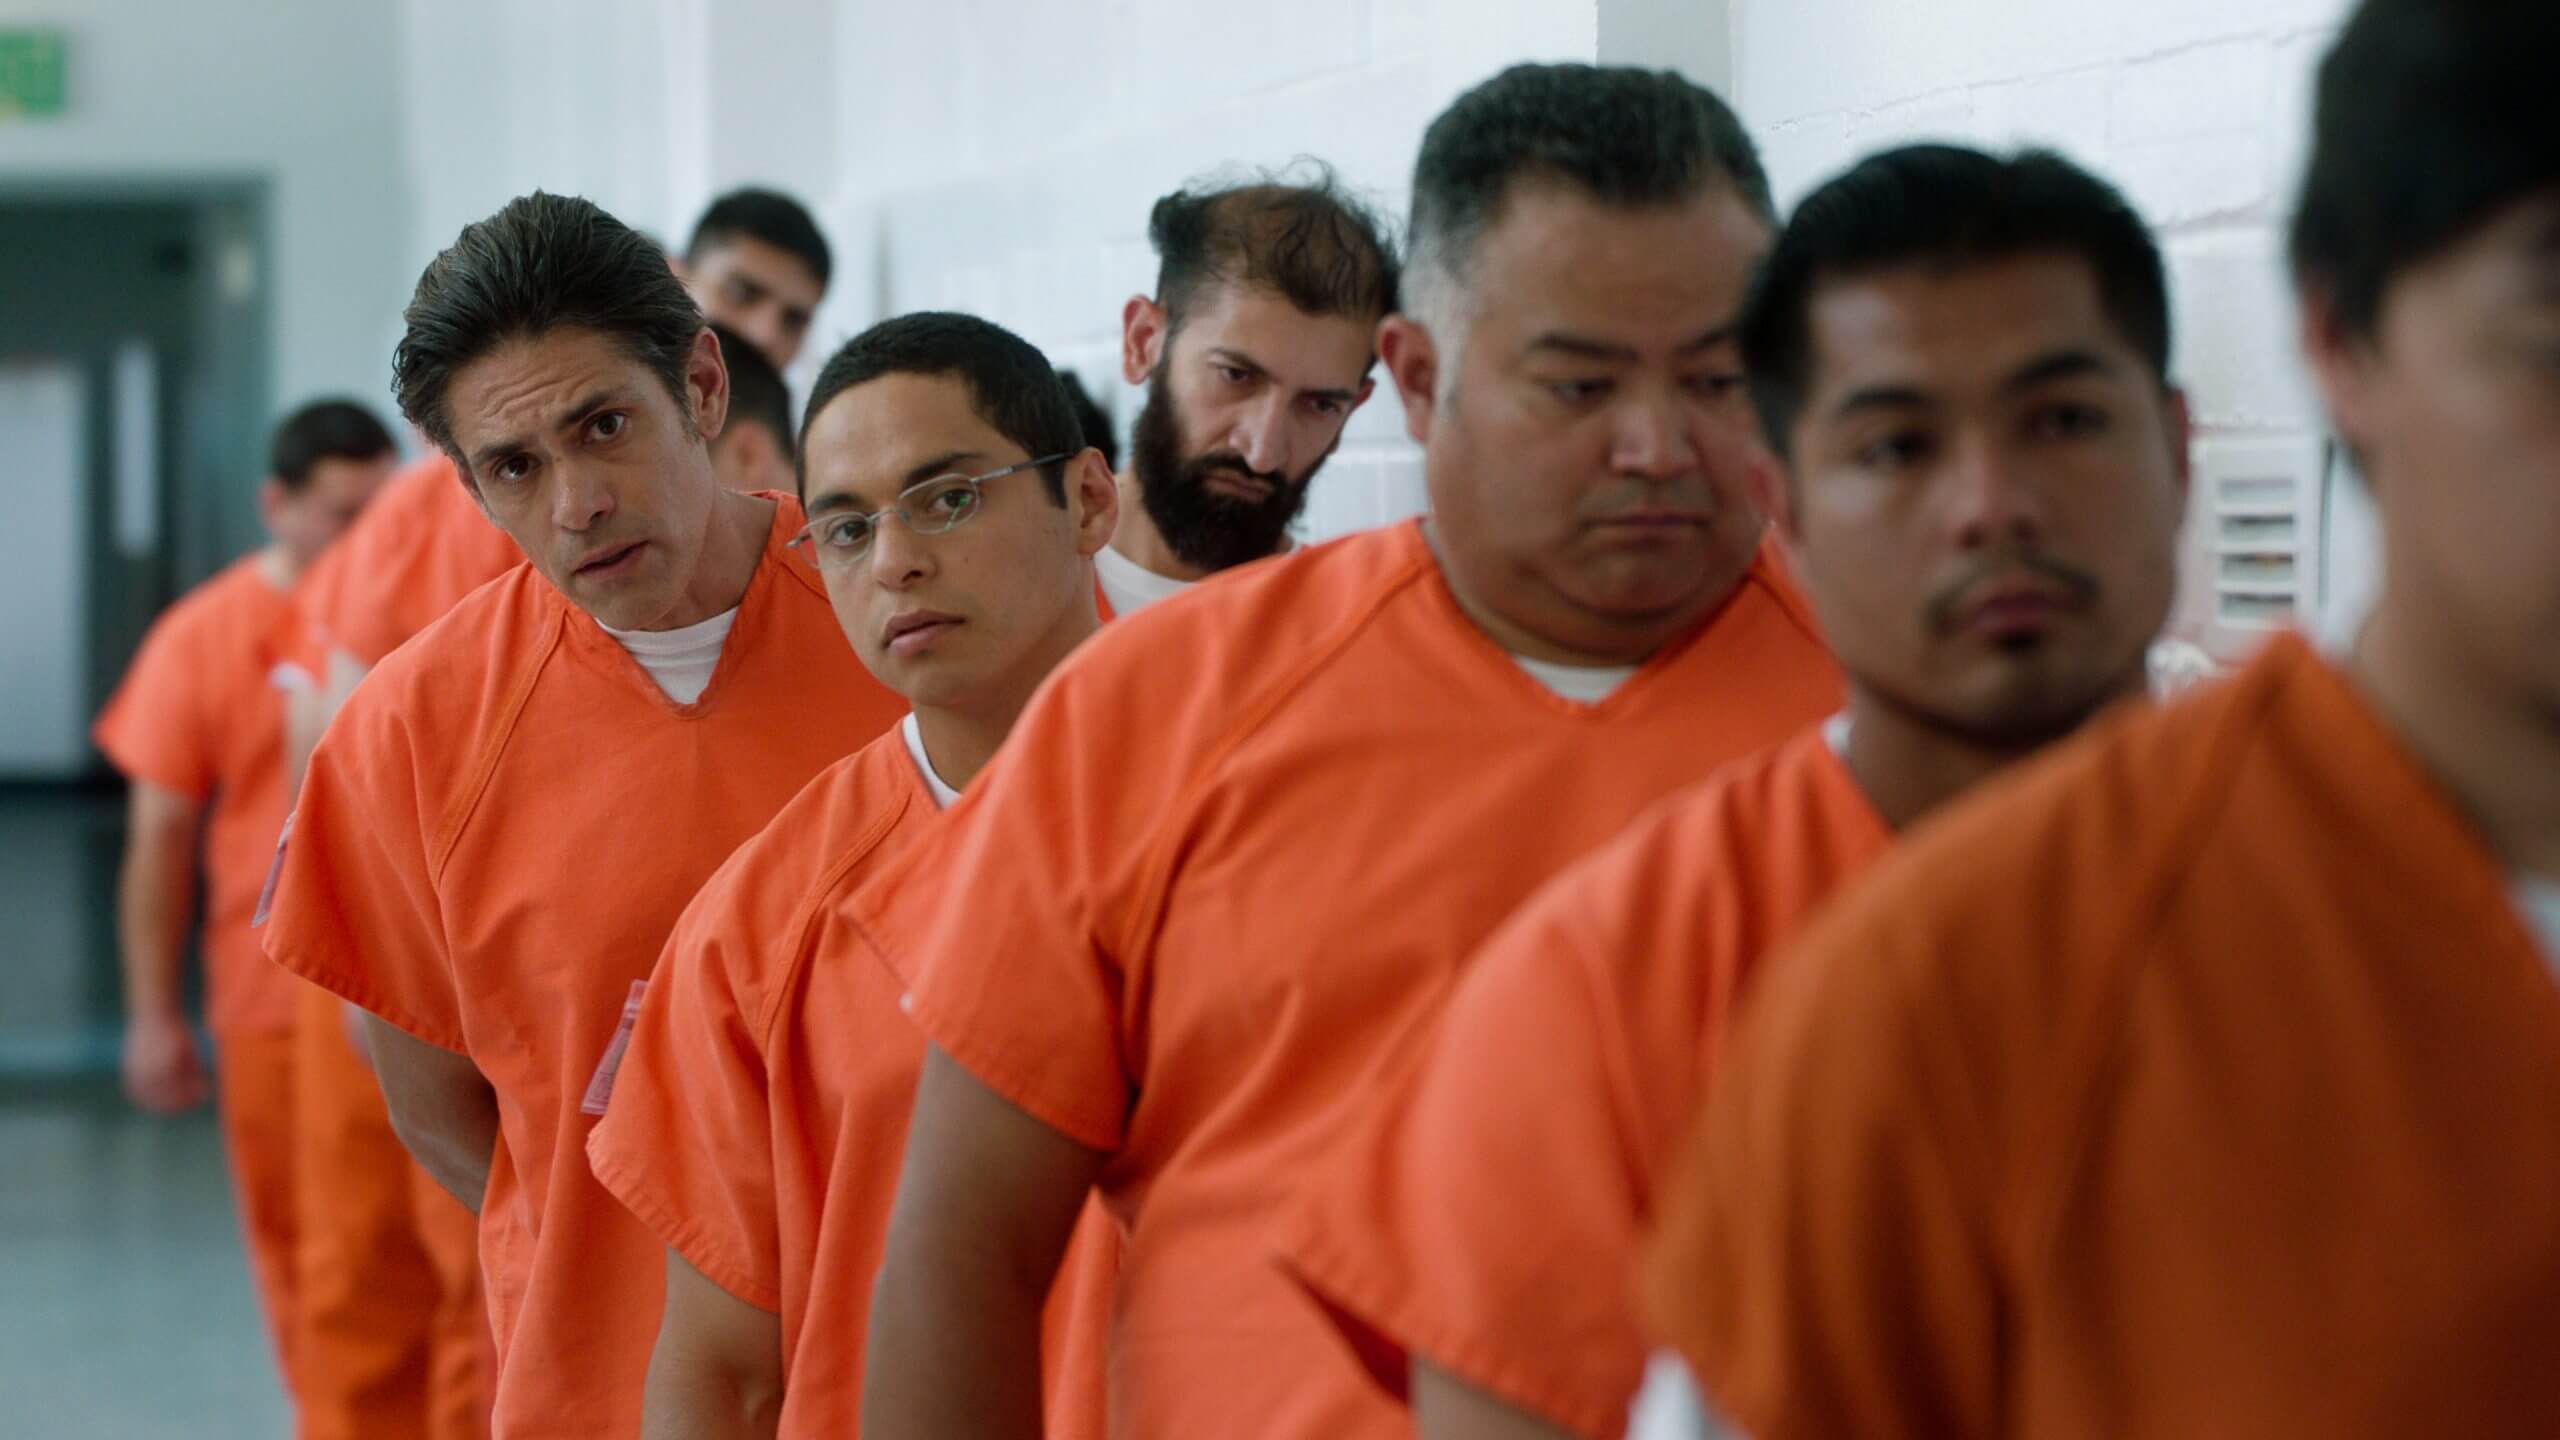 Men in orange prison uniforms are in a line.